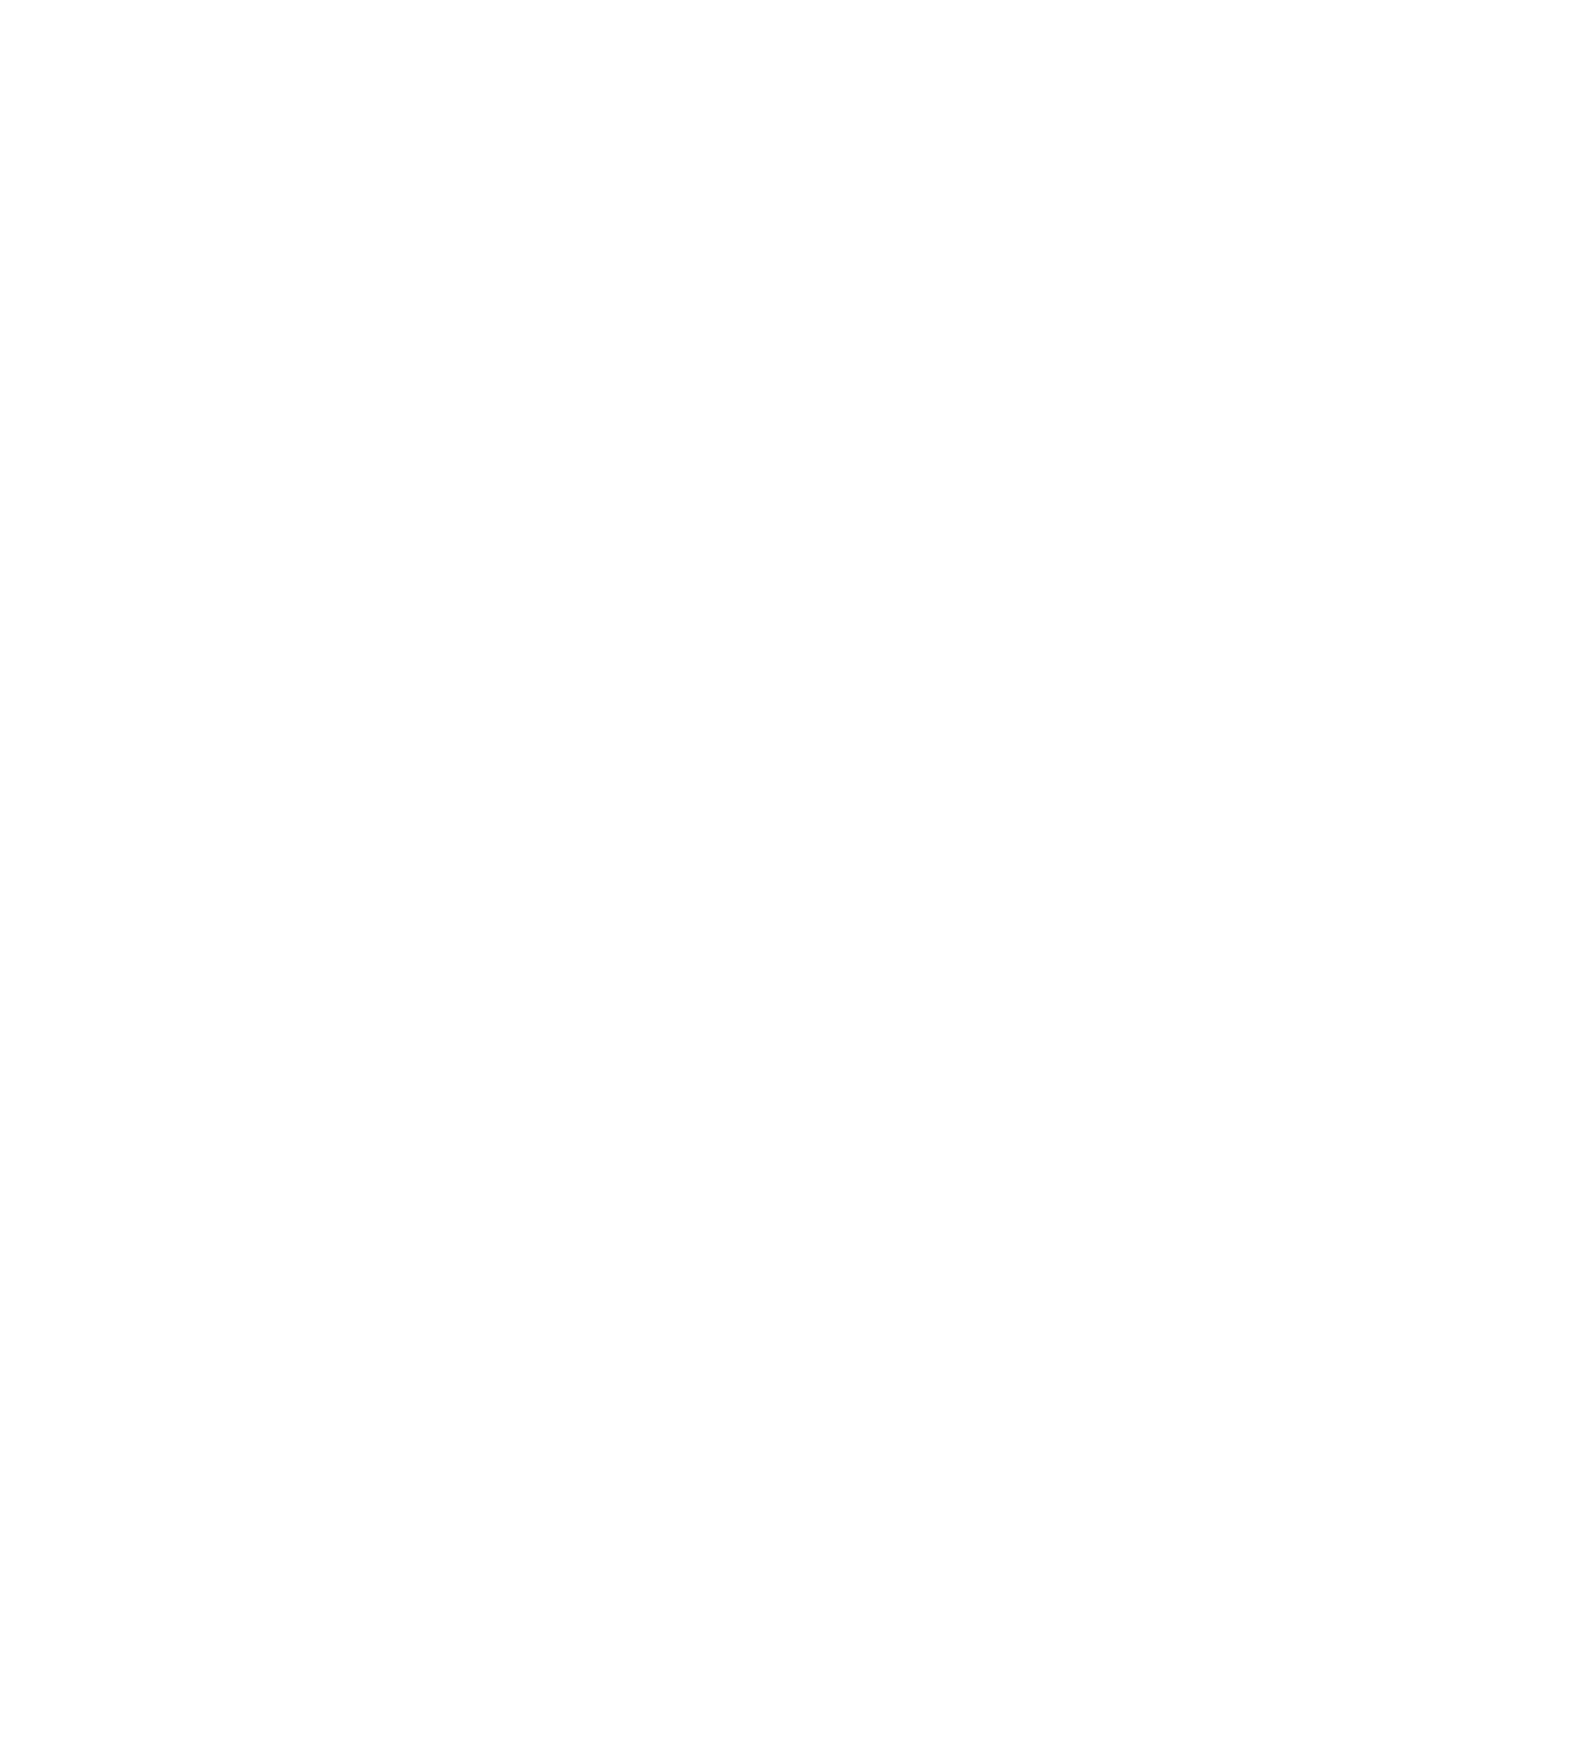 Groupe LG logo